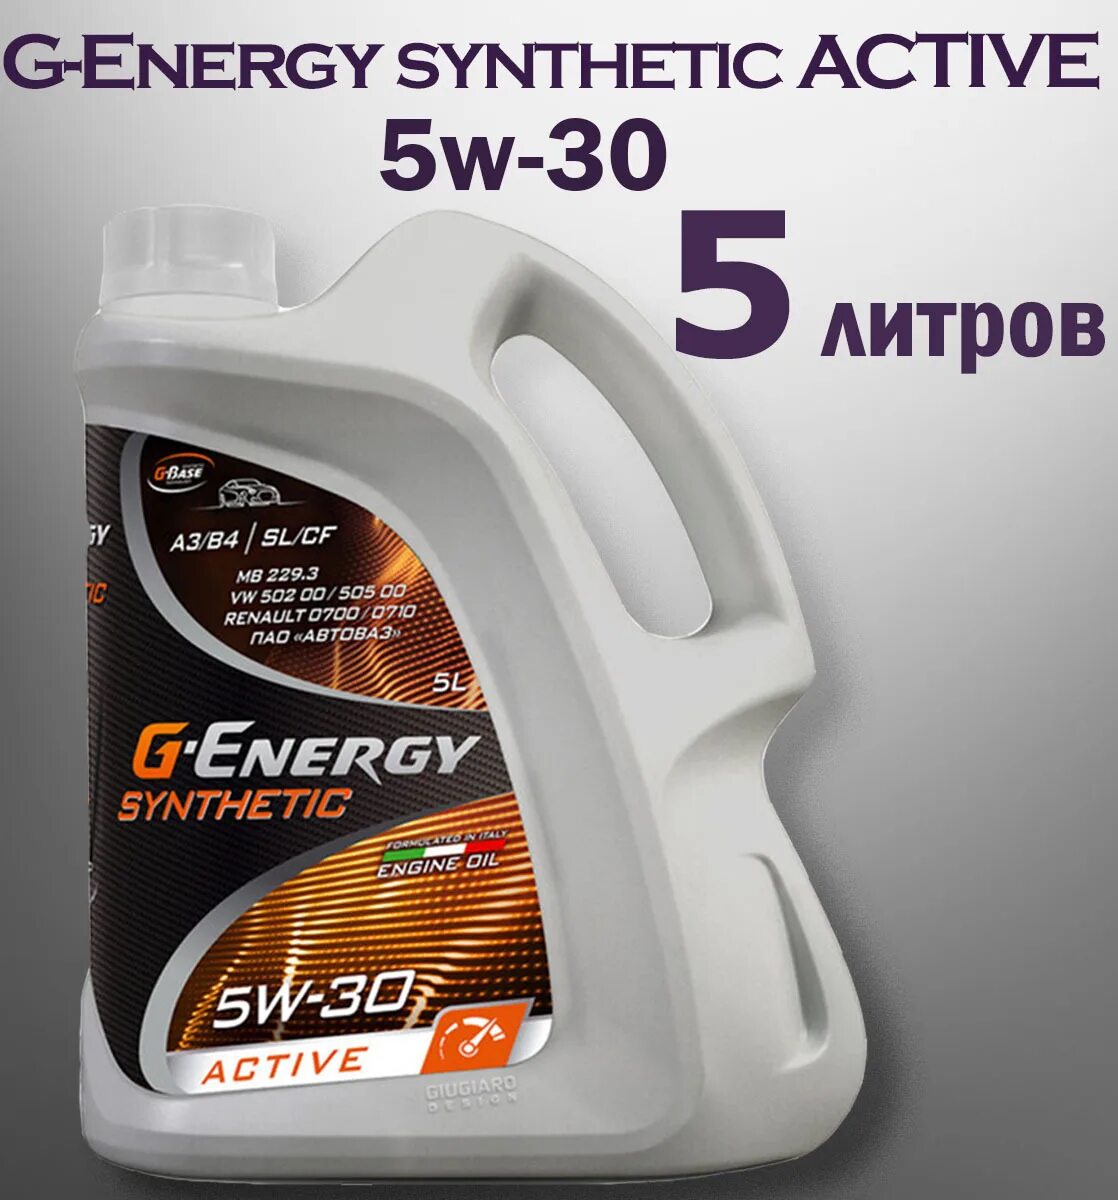 Масло g energy active 5w40. Масло g-Energy Syntetic Activ 5w30. G-Energy Synthetic Active 5w-30. G Energy 5w30 синтетика. G Энерджи 5w30 синтетика.